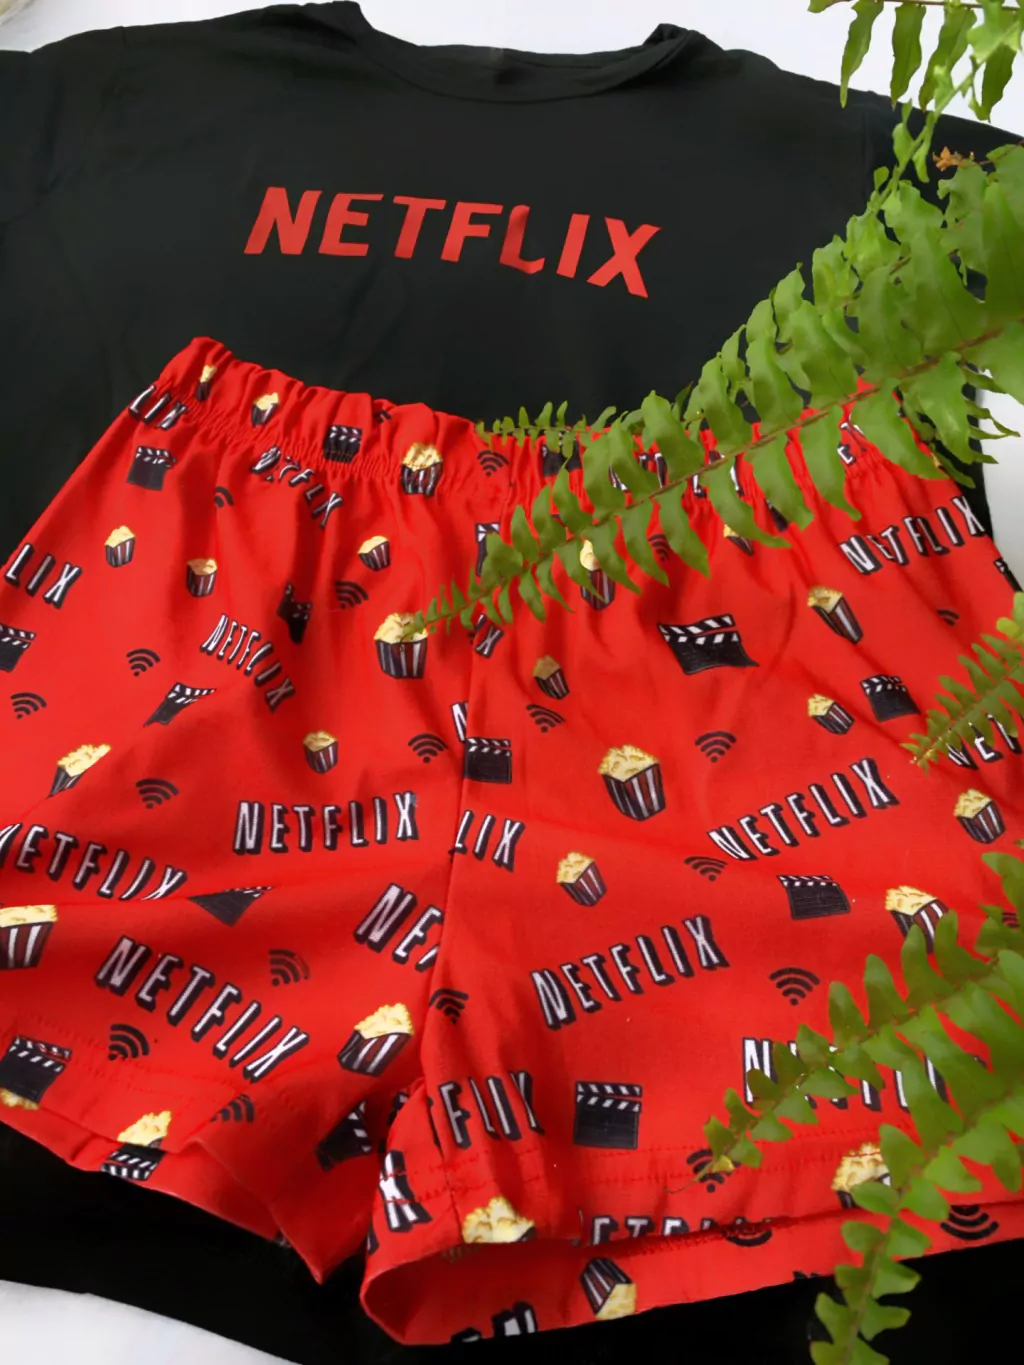 Pijama de Netflix - Comprar en roberta objetos